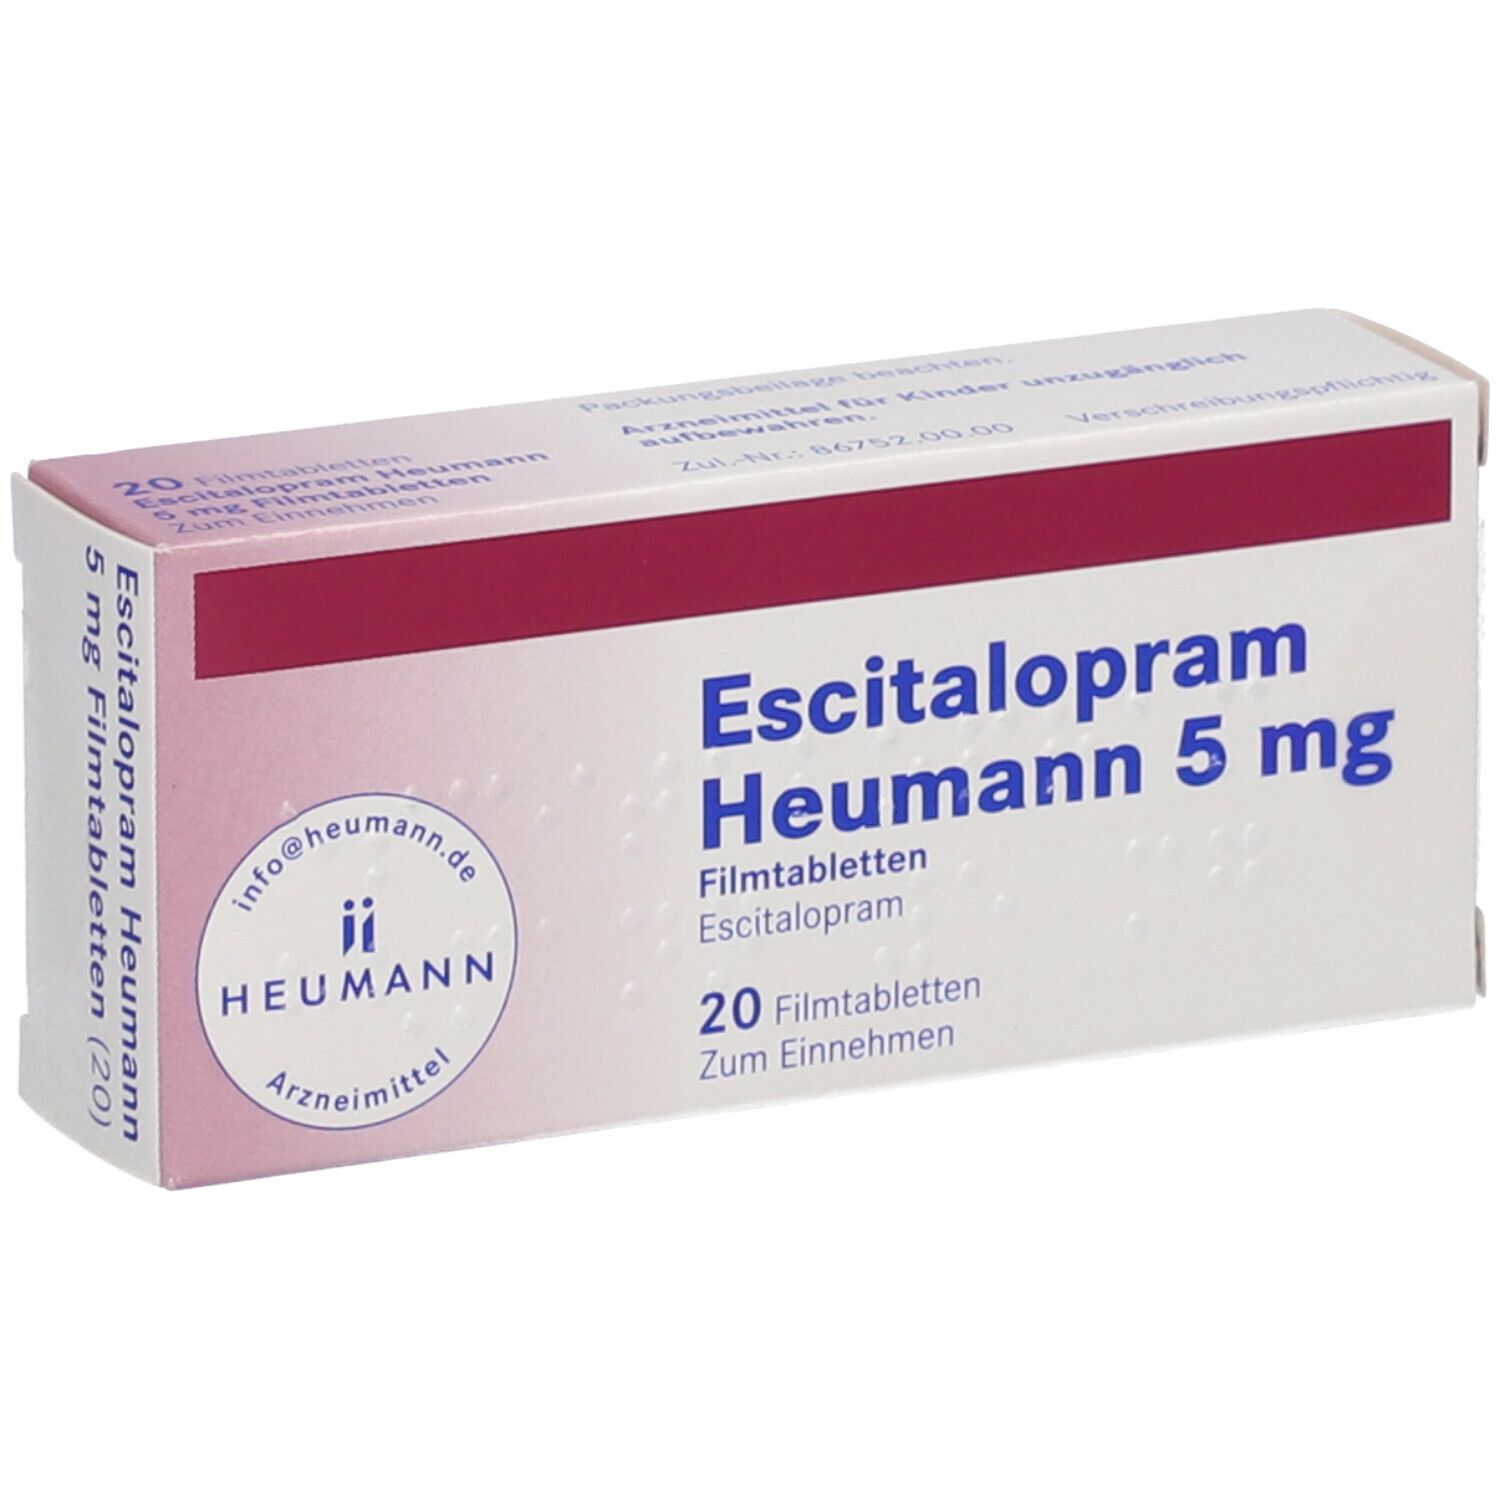 Escitalopram Heumann 5 mg